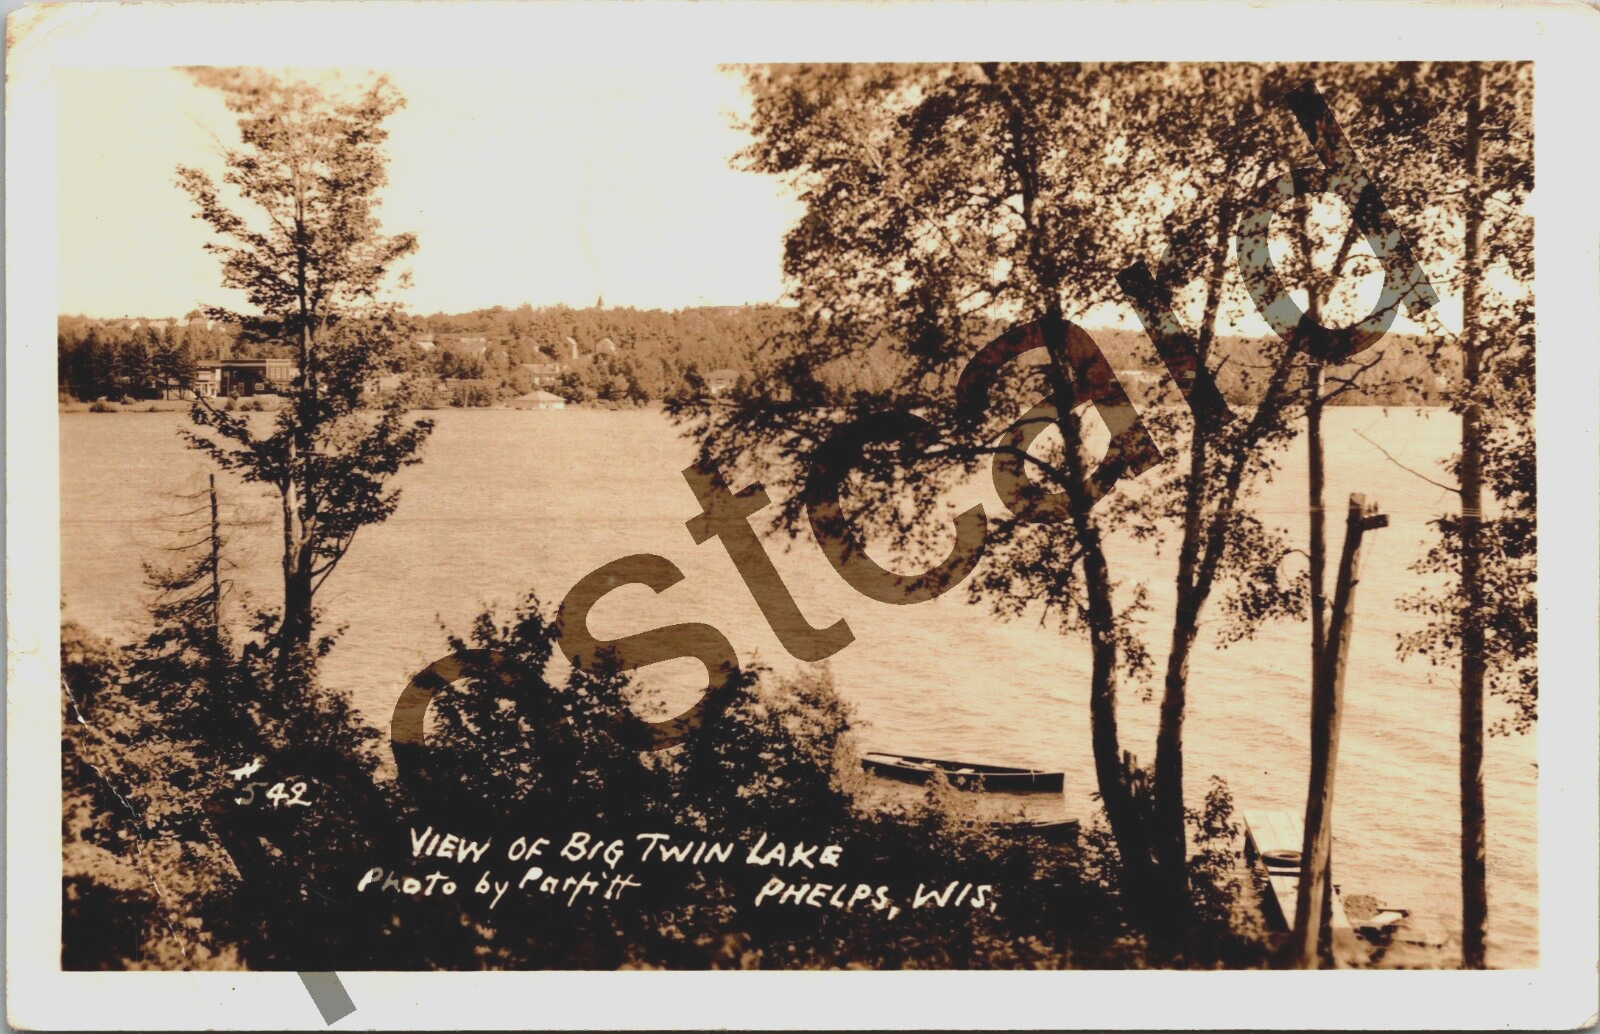 1943 PHELPS WI, View of Big Twin Lake, Photo by Parfitt #542 RPPC postcard jj278